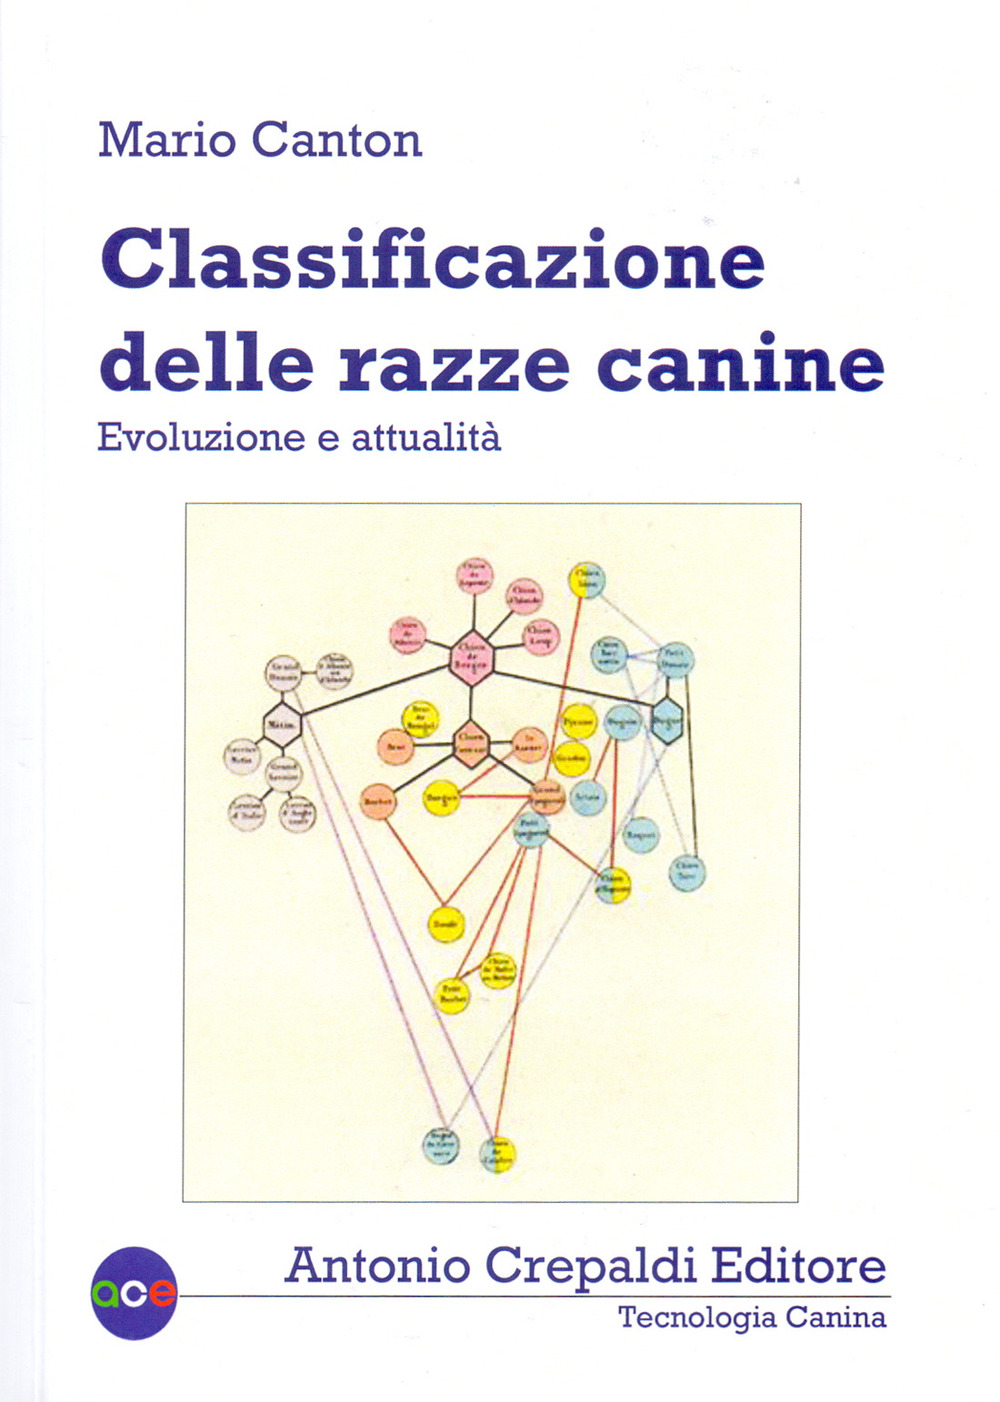 Libri Mario Canton - Classificazione Delle Razze Canine. Evoluzione E Attualita NUOVO SIGILLATO, EDIZIONE DEL 29/02/2020 SUBITO DISPONIBILE